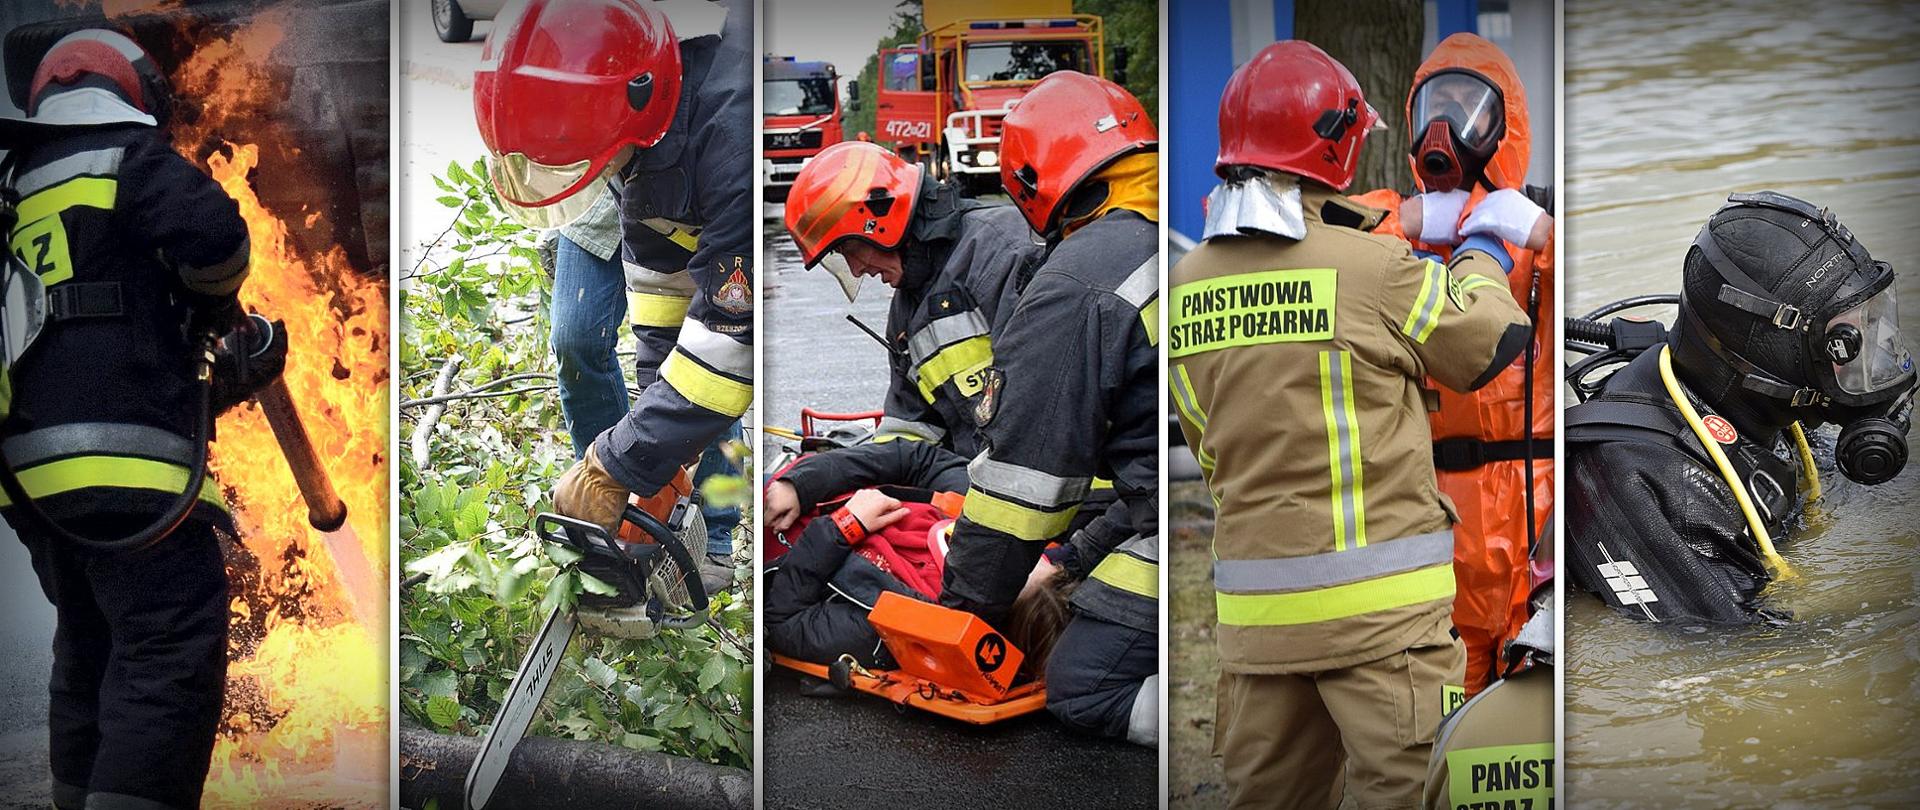 Kolaż pięciu zdjęć przedstawiający strażaków Państwowej Straży Pożarnej podczas różnych działań ratowniczo-gaśniczych. Od lewej strony strażak gasi pożar, strażak przy pomocy piły spalinowej przecina drzewo, dwóch strażaków klęczących na jezdni udziela pomocy osobie poszkodowanej, która leży na desce ortopedycznej, strażak Państwowej Straży Pożarnej pomaga zakładać strój ochrony przeciwchemicznej drugiemu funkcjonariuszowi, funkcjonariusz ubrany w strój płetwonurka zanurzony jest w wodzie.